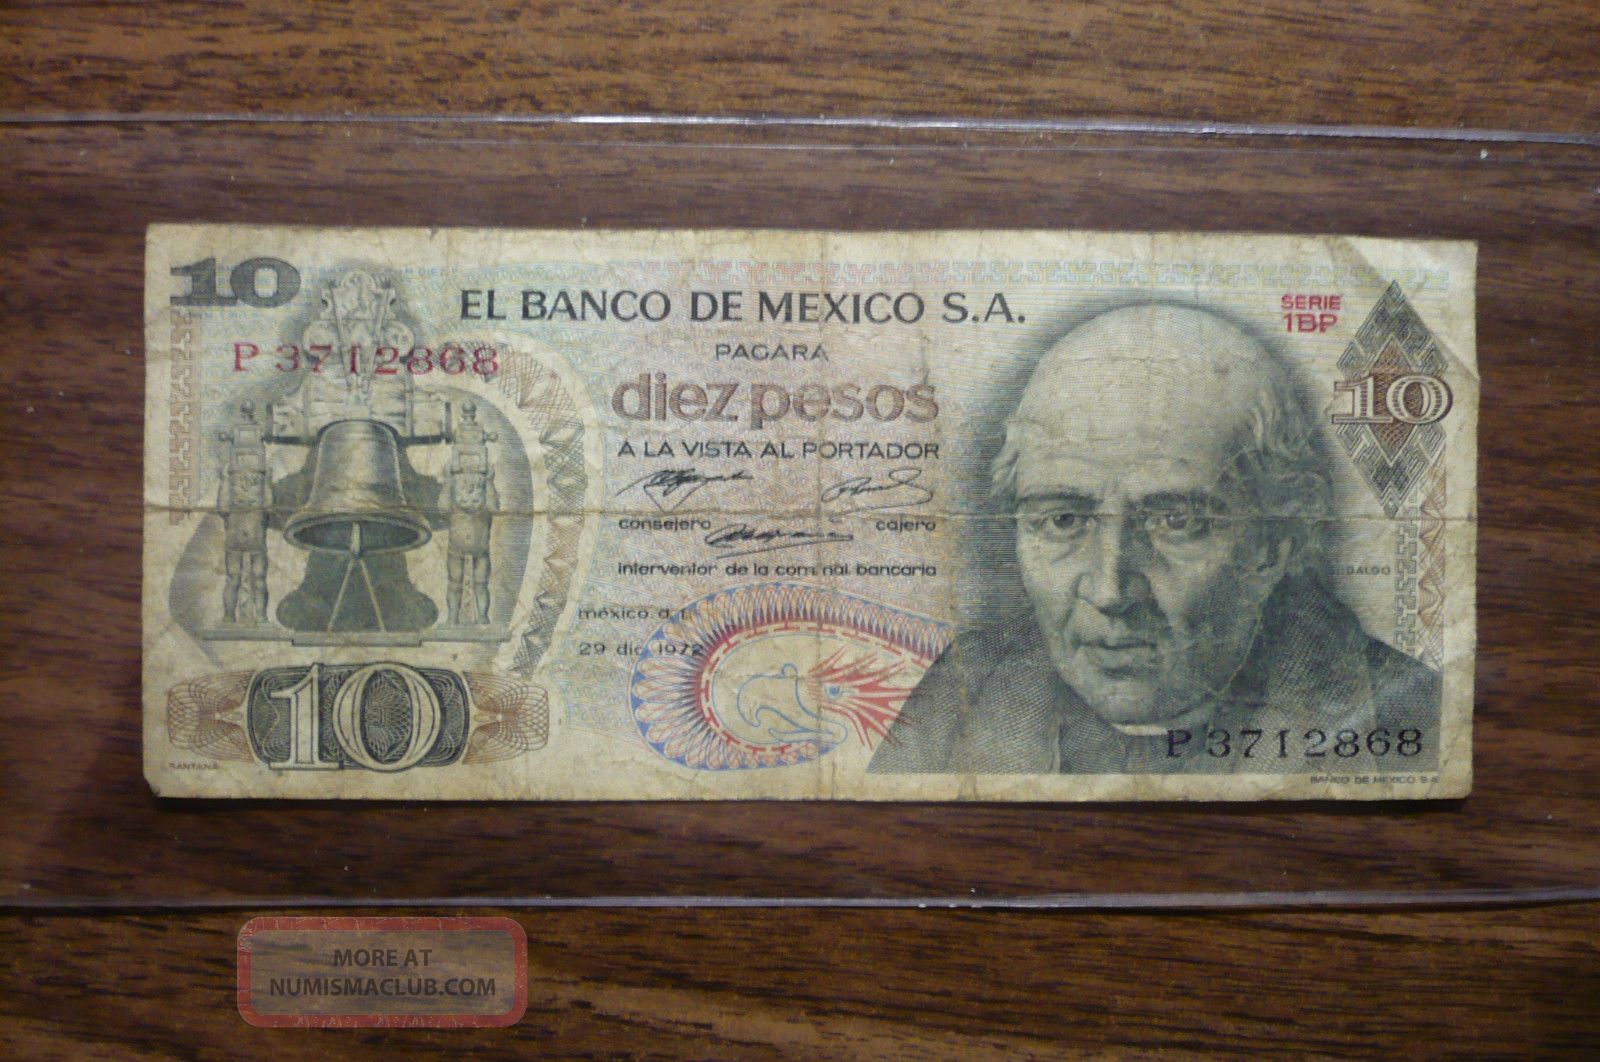 1972 Dec 29 Circulated Diez Pesos $10 Banco De Mexico Sa 1bp Series P3712868 13 Small Size Notes photo